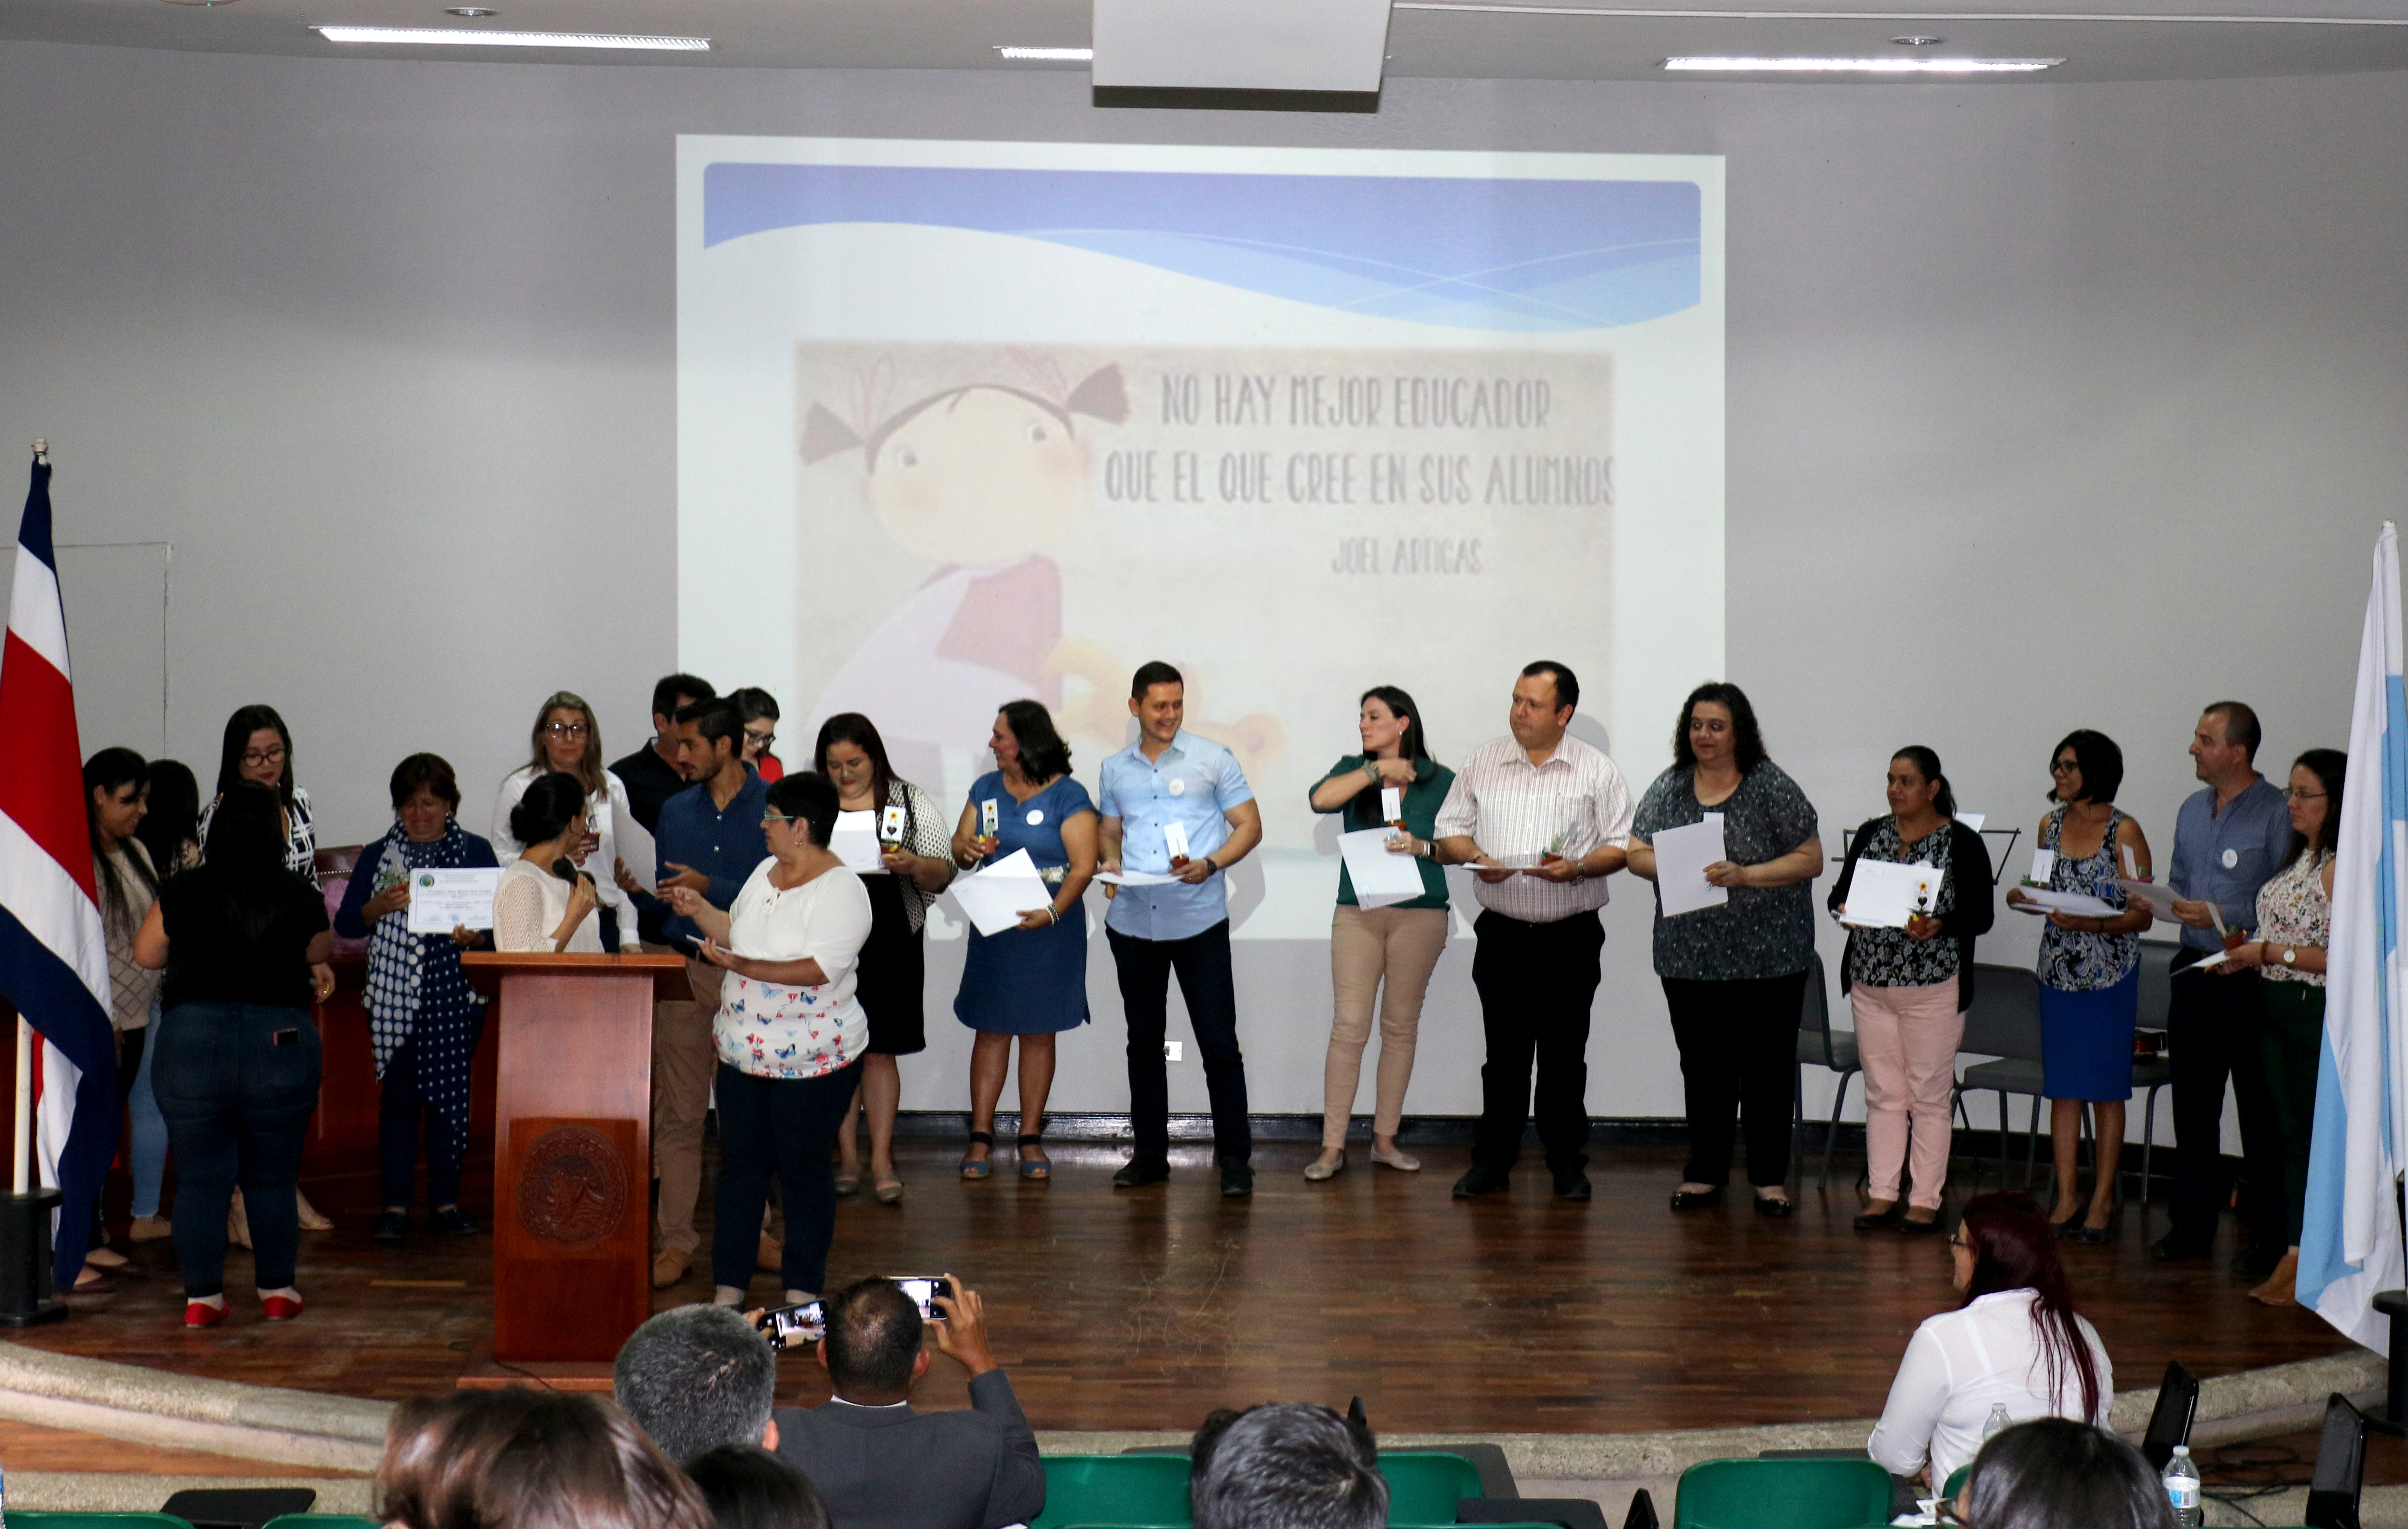 Profesores artistas: una actividad del Curso de Introducción a la Pedagogía que reconoce la labor y vocación docente costarricense